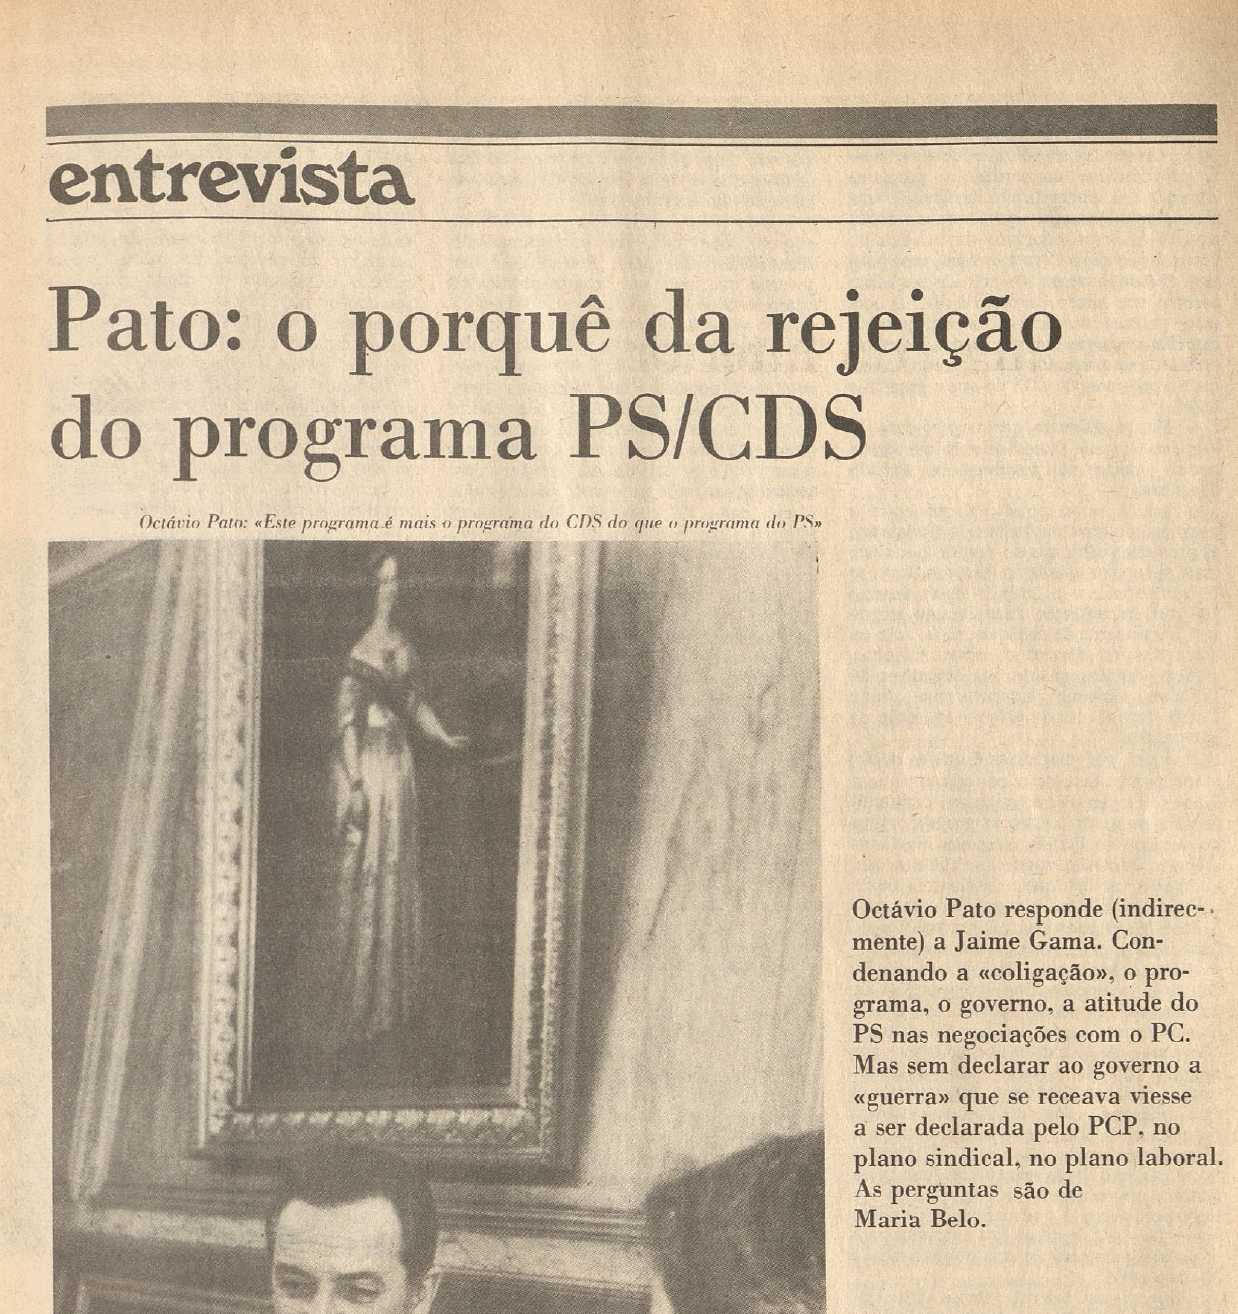 "Pato: o porquê da rejeiçao do programa PS/CDS"